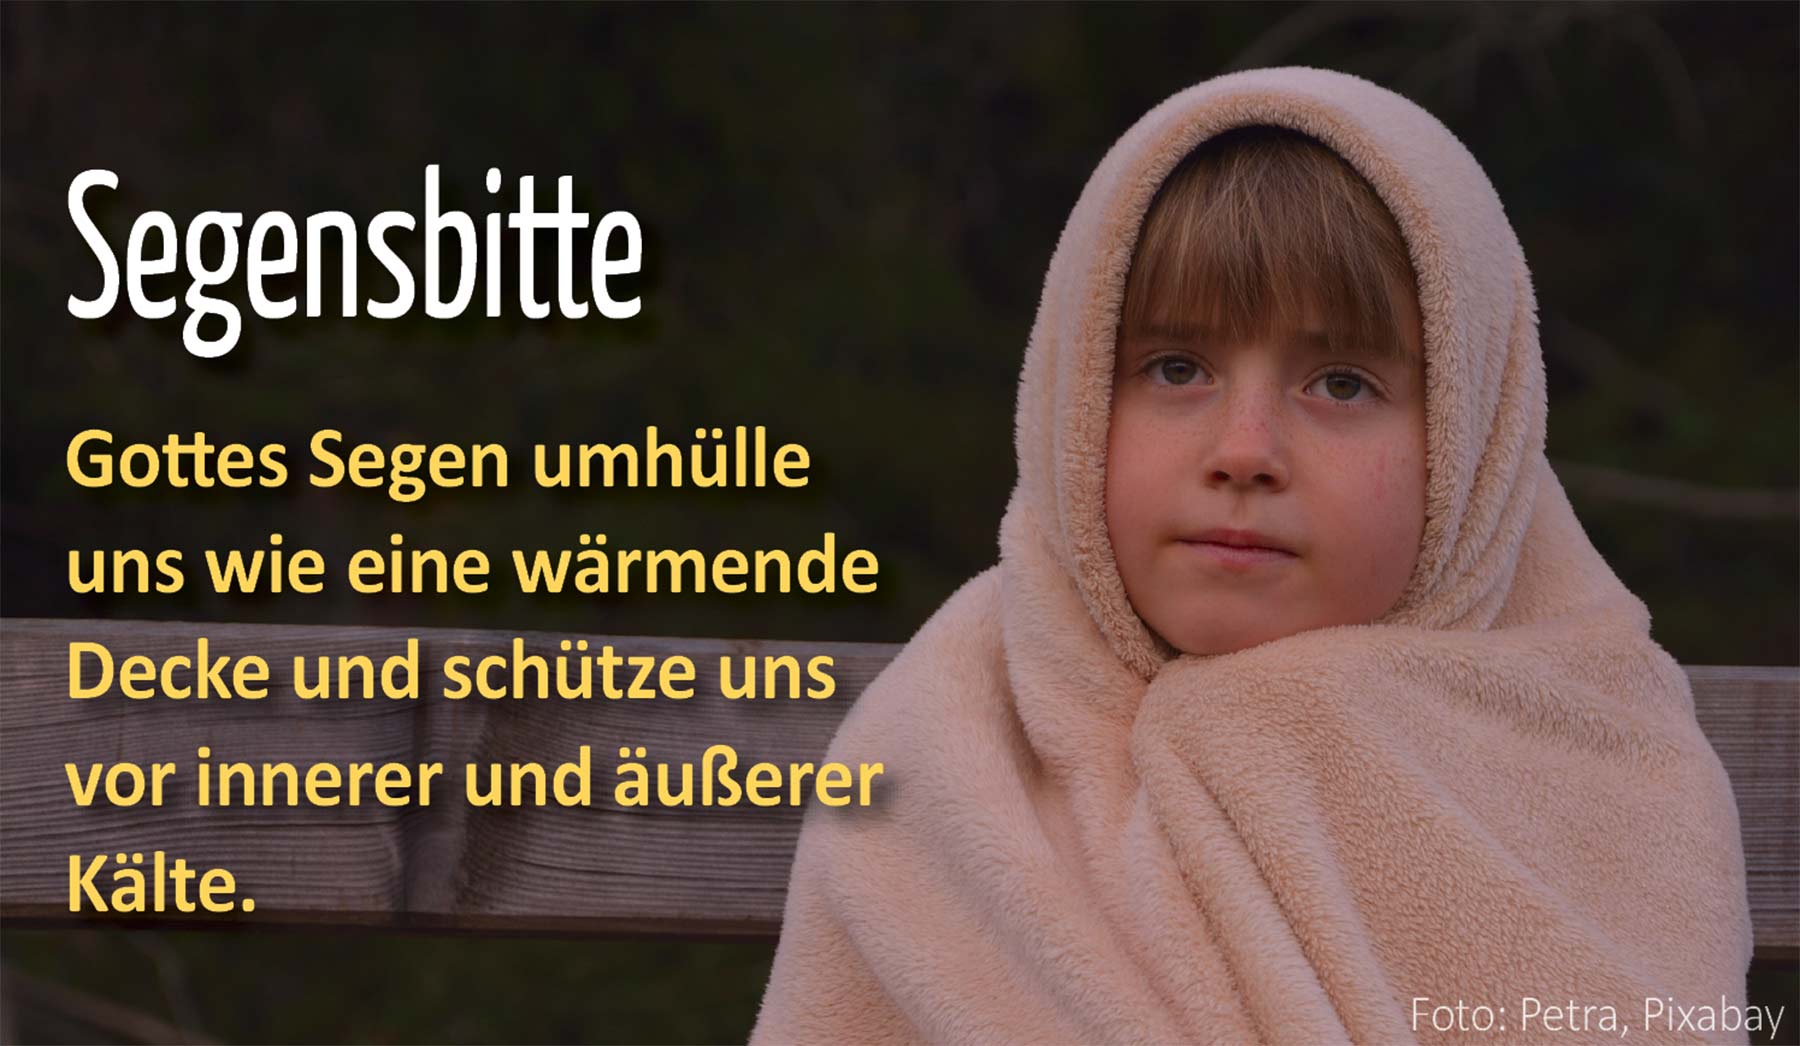 Spirituelles - Segensbitte - Kind in Decke eingehüllt (Foto: Petra, Pixabay)